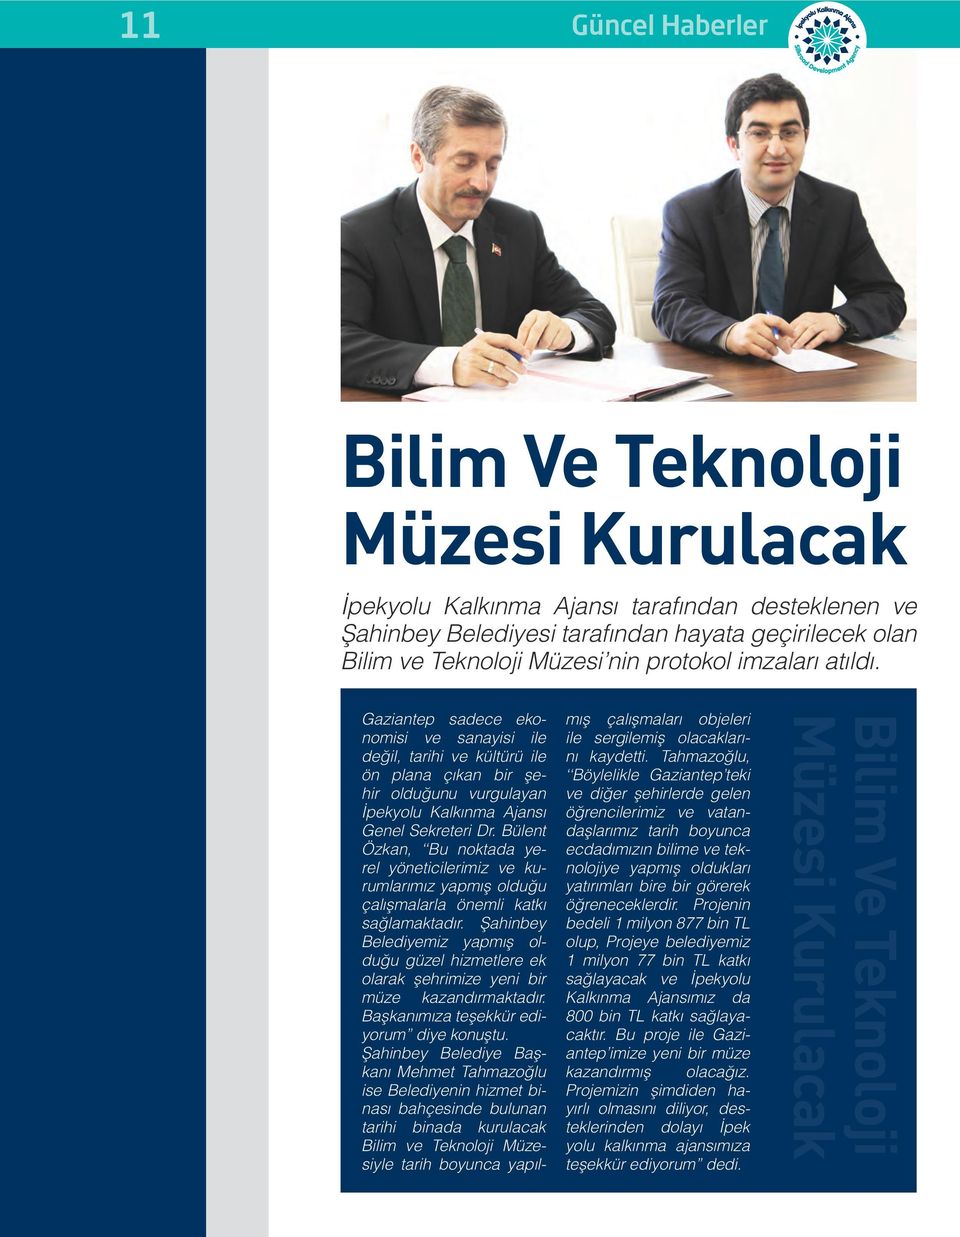 Bülent Özkan, Bu noktada yerel yöneticilerimiz ve kurumlarımız yapmış olduğu çalışmalarla önemli katkı sağlamaktadır.